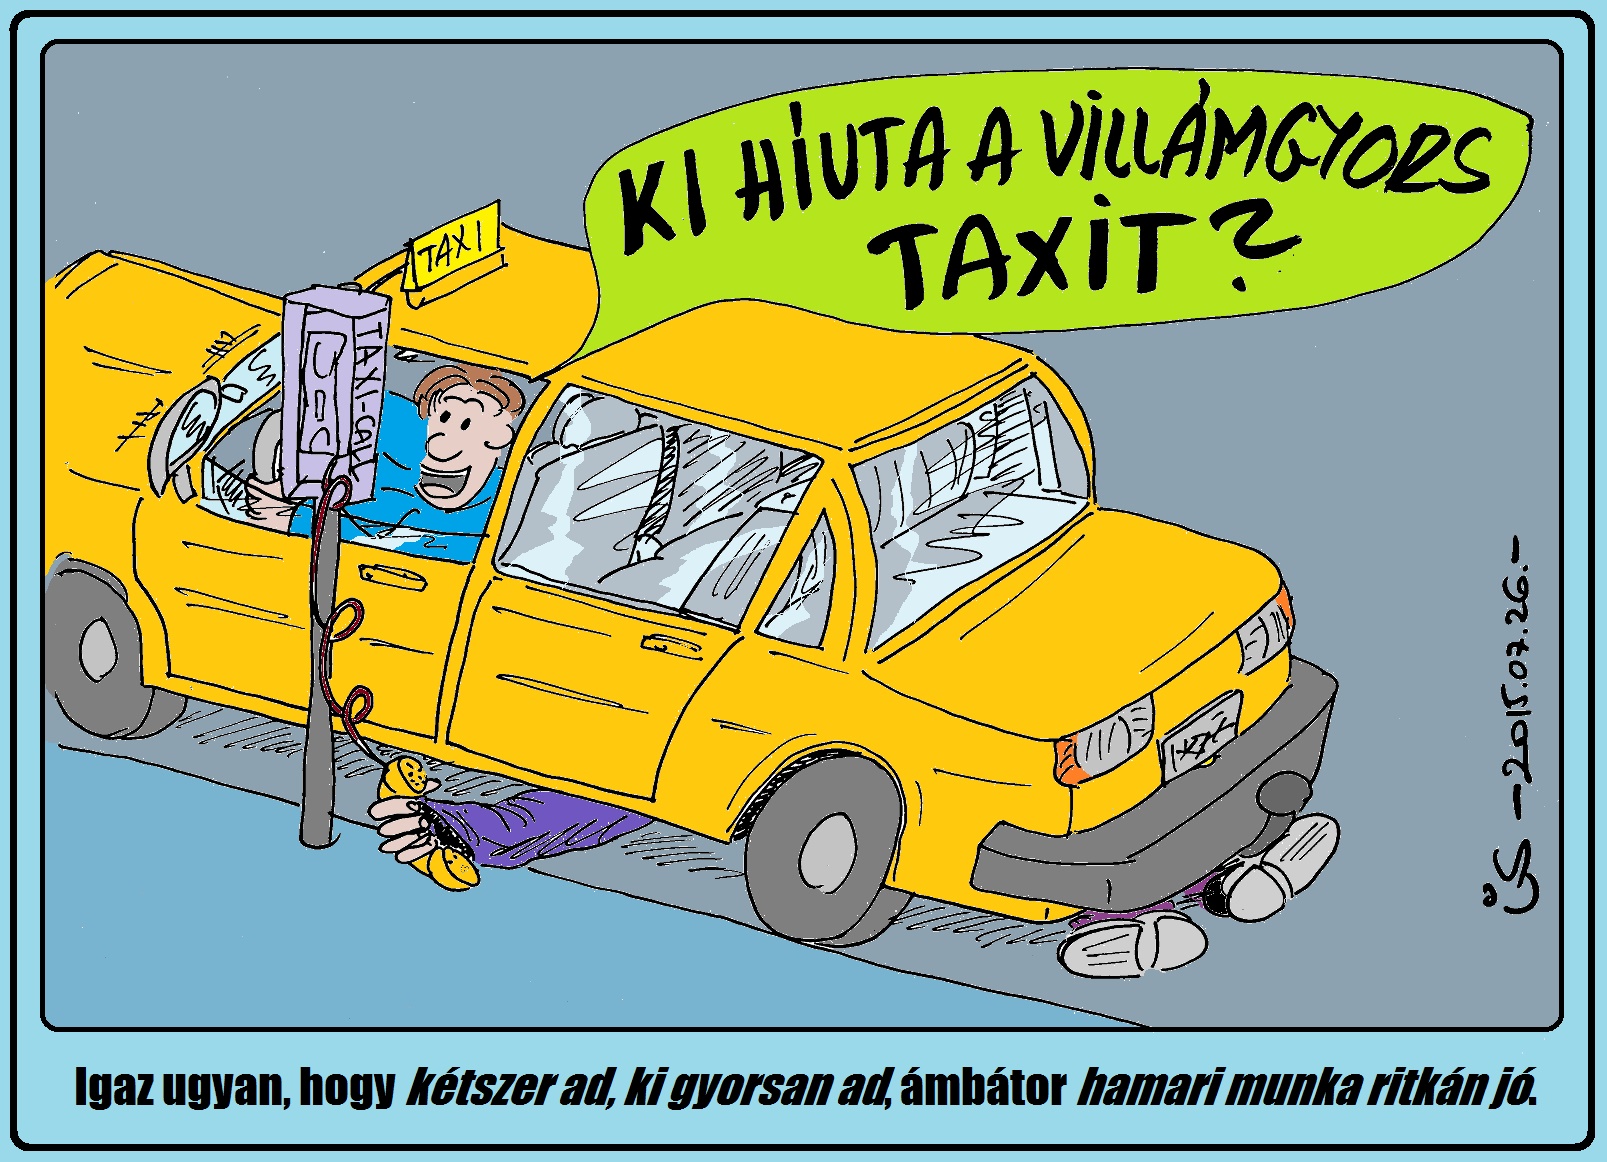 07_26_3_villamgyors_taxi.jpg